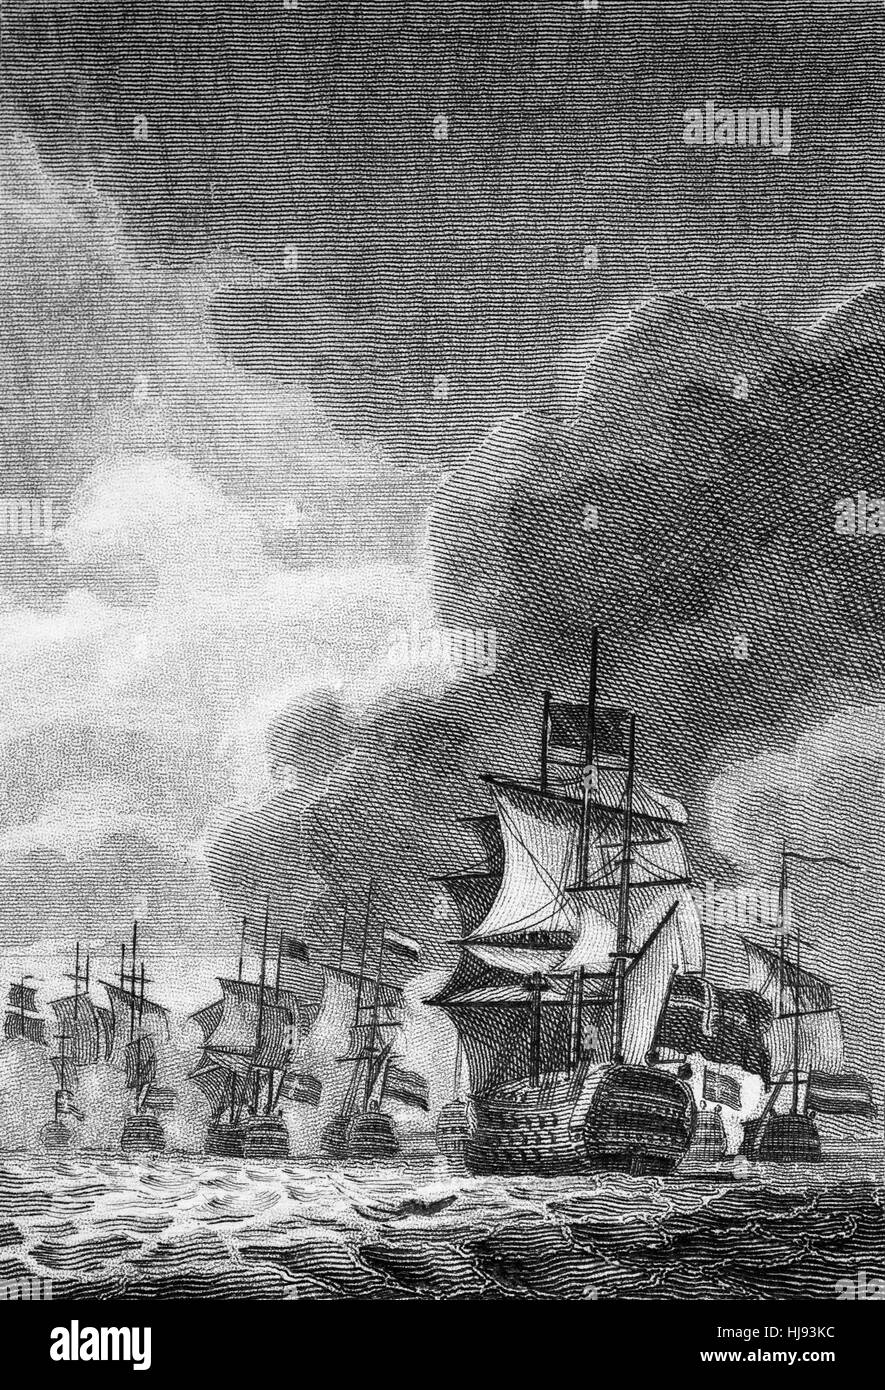 Sir Edward Spragges aka Spragg oder Sprague (ca. 1620-1673) war ein irischer Admiral der Royal Navy. Er war ein feurig, brillant versierter Seemann, die nach der Restaurierung von König Charles II in 1660 einschließlich eine Niederlage der Niederländer im Jahre 1672, während der dritte Anglo-niederländischen Krieg in der Spragges im Befehl des roten Geschwaders auf "The London" war in der Schlacht von Solebay 1672 in vielen großen Schlachten gekämpft. Stockfoto